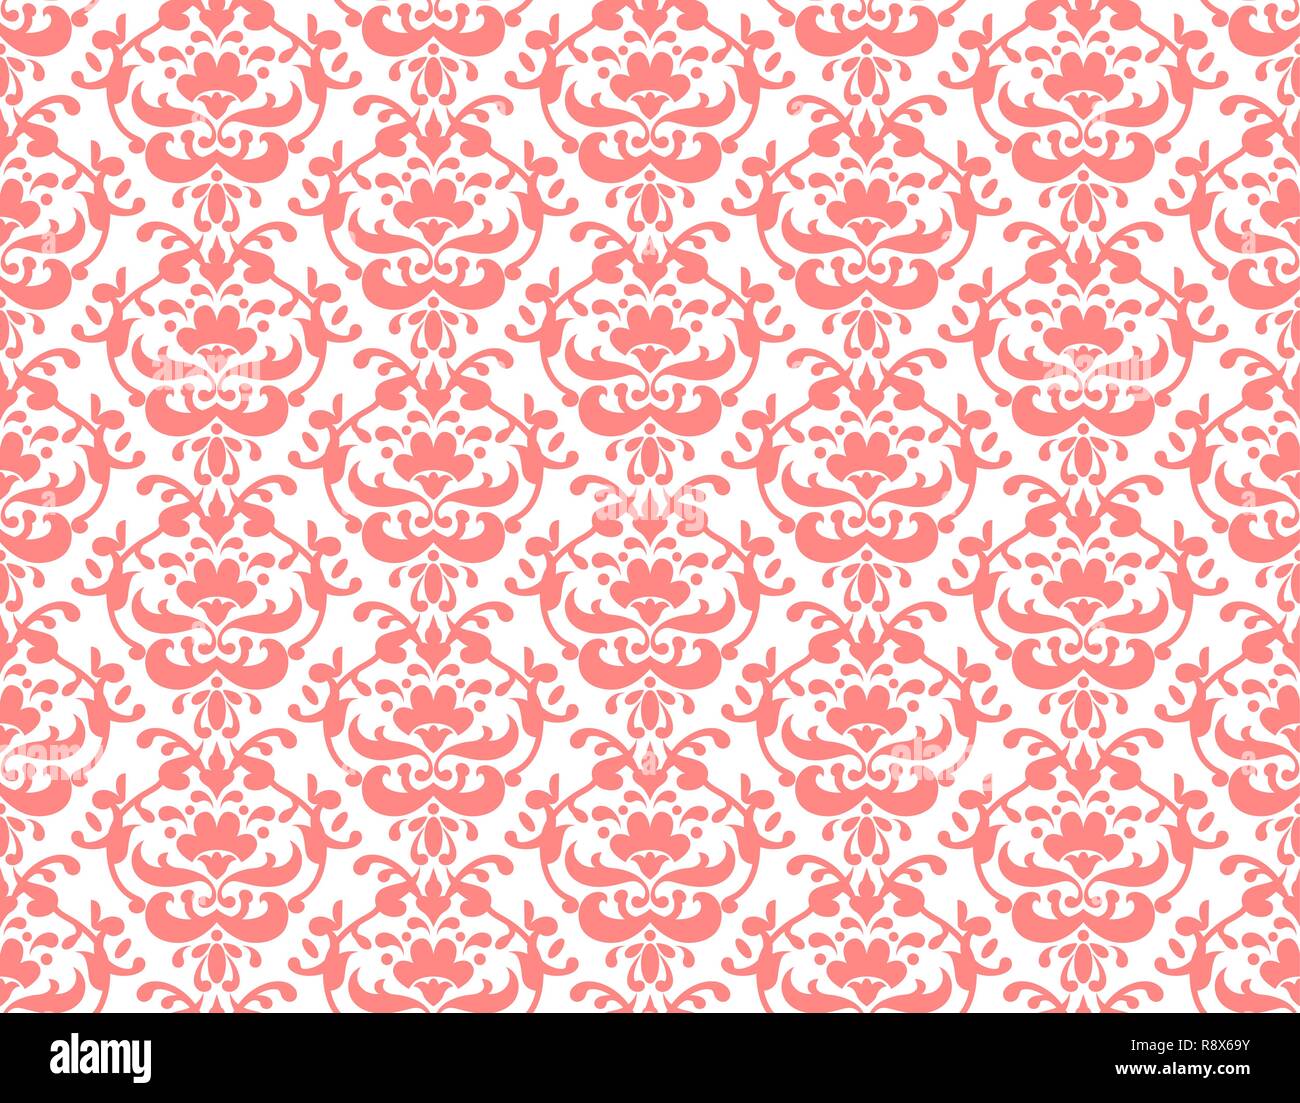 Rote Koralle ornamentale Muster für Design, Banner, Ticket, Packungsbeilage und so weiter. Wallpaper reapiting Hintergrund Stock Vektor